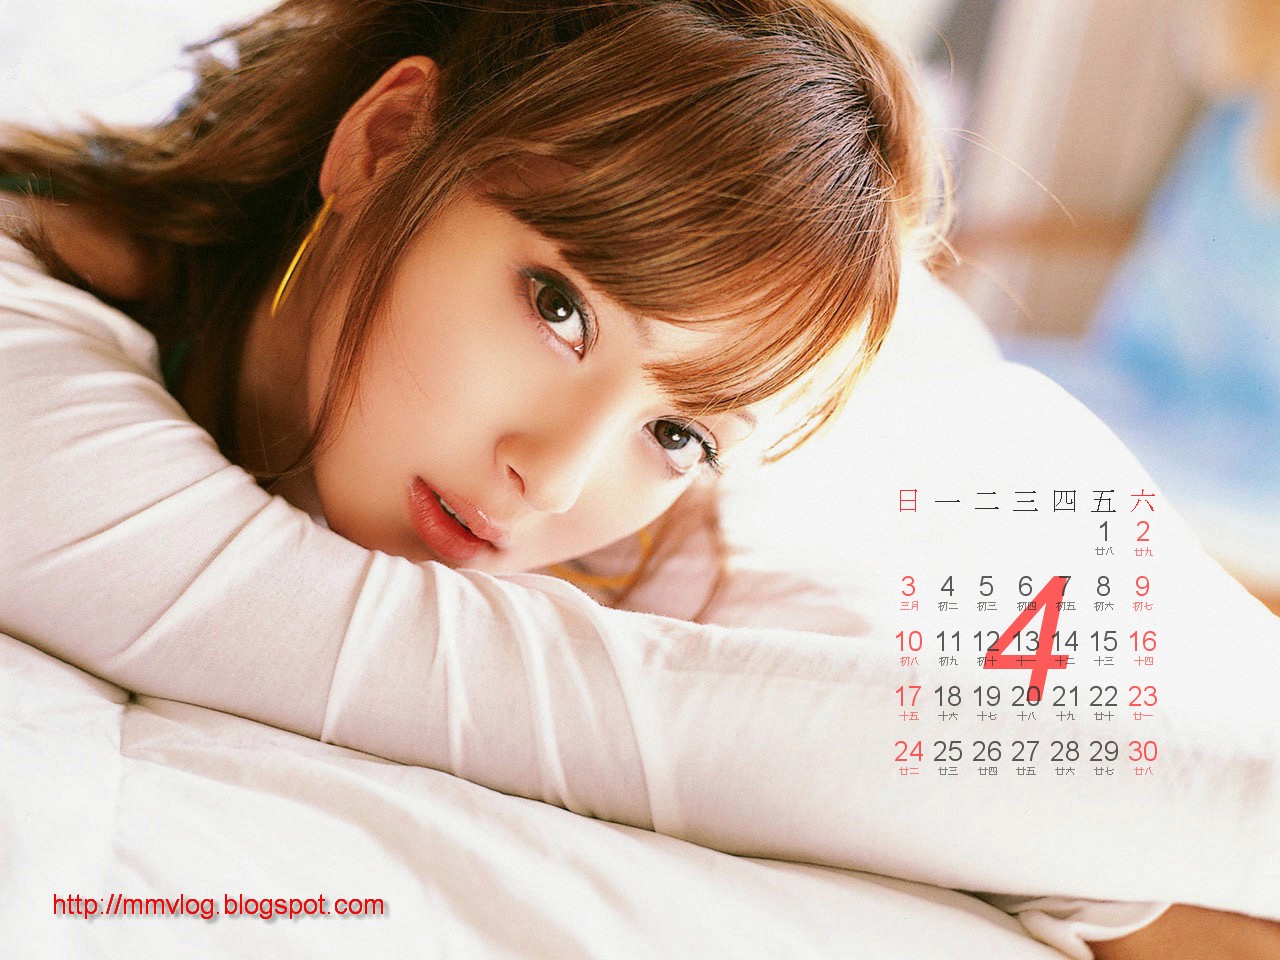 希 Sasaki Nozomi 2011年 寫真月曆桌布下載 Calendar wallpaper ...